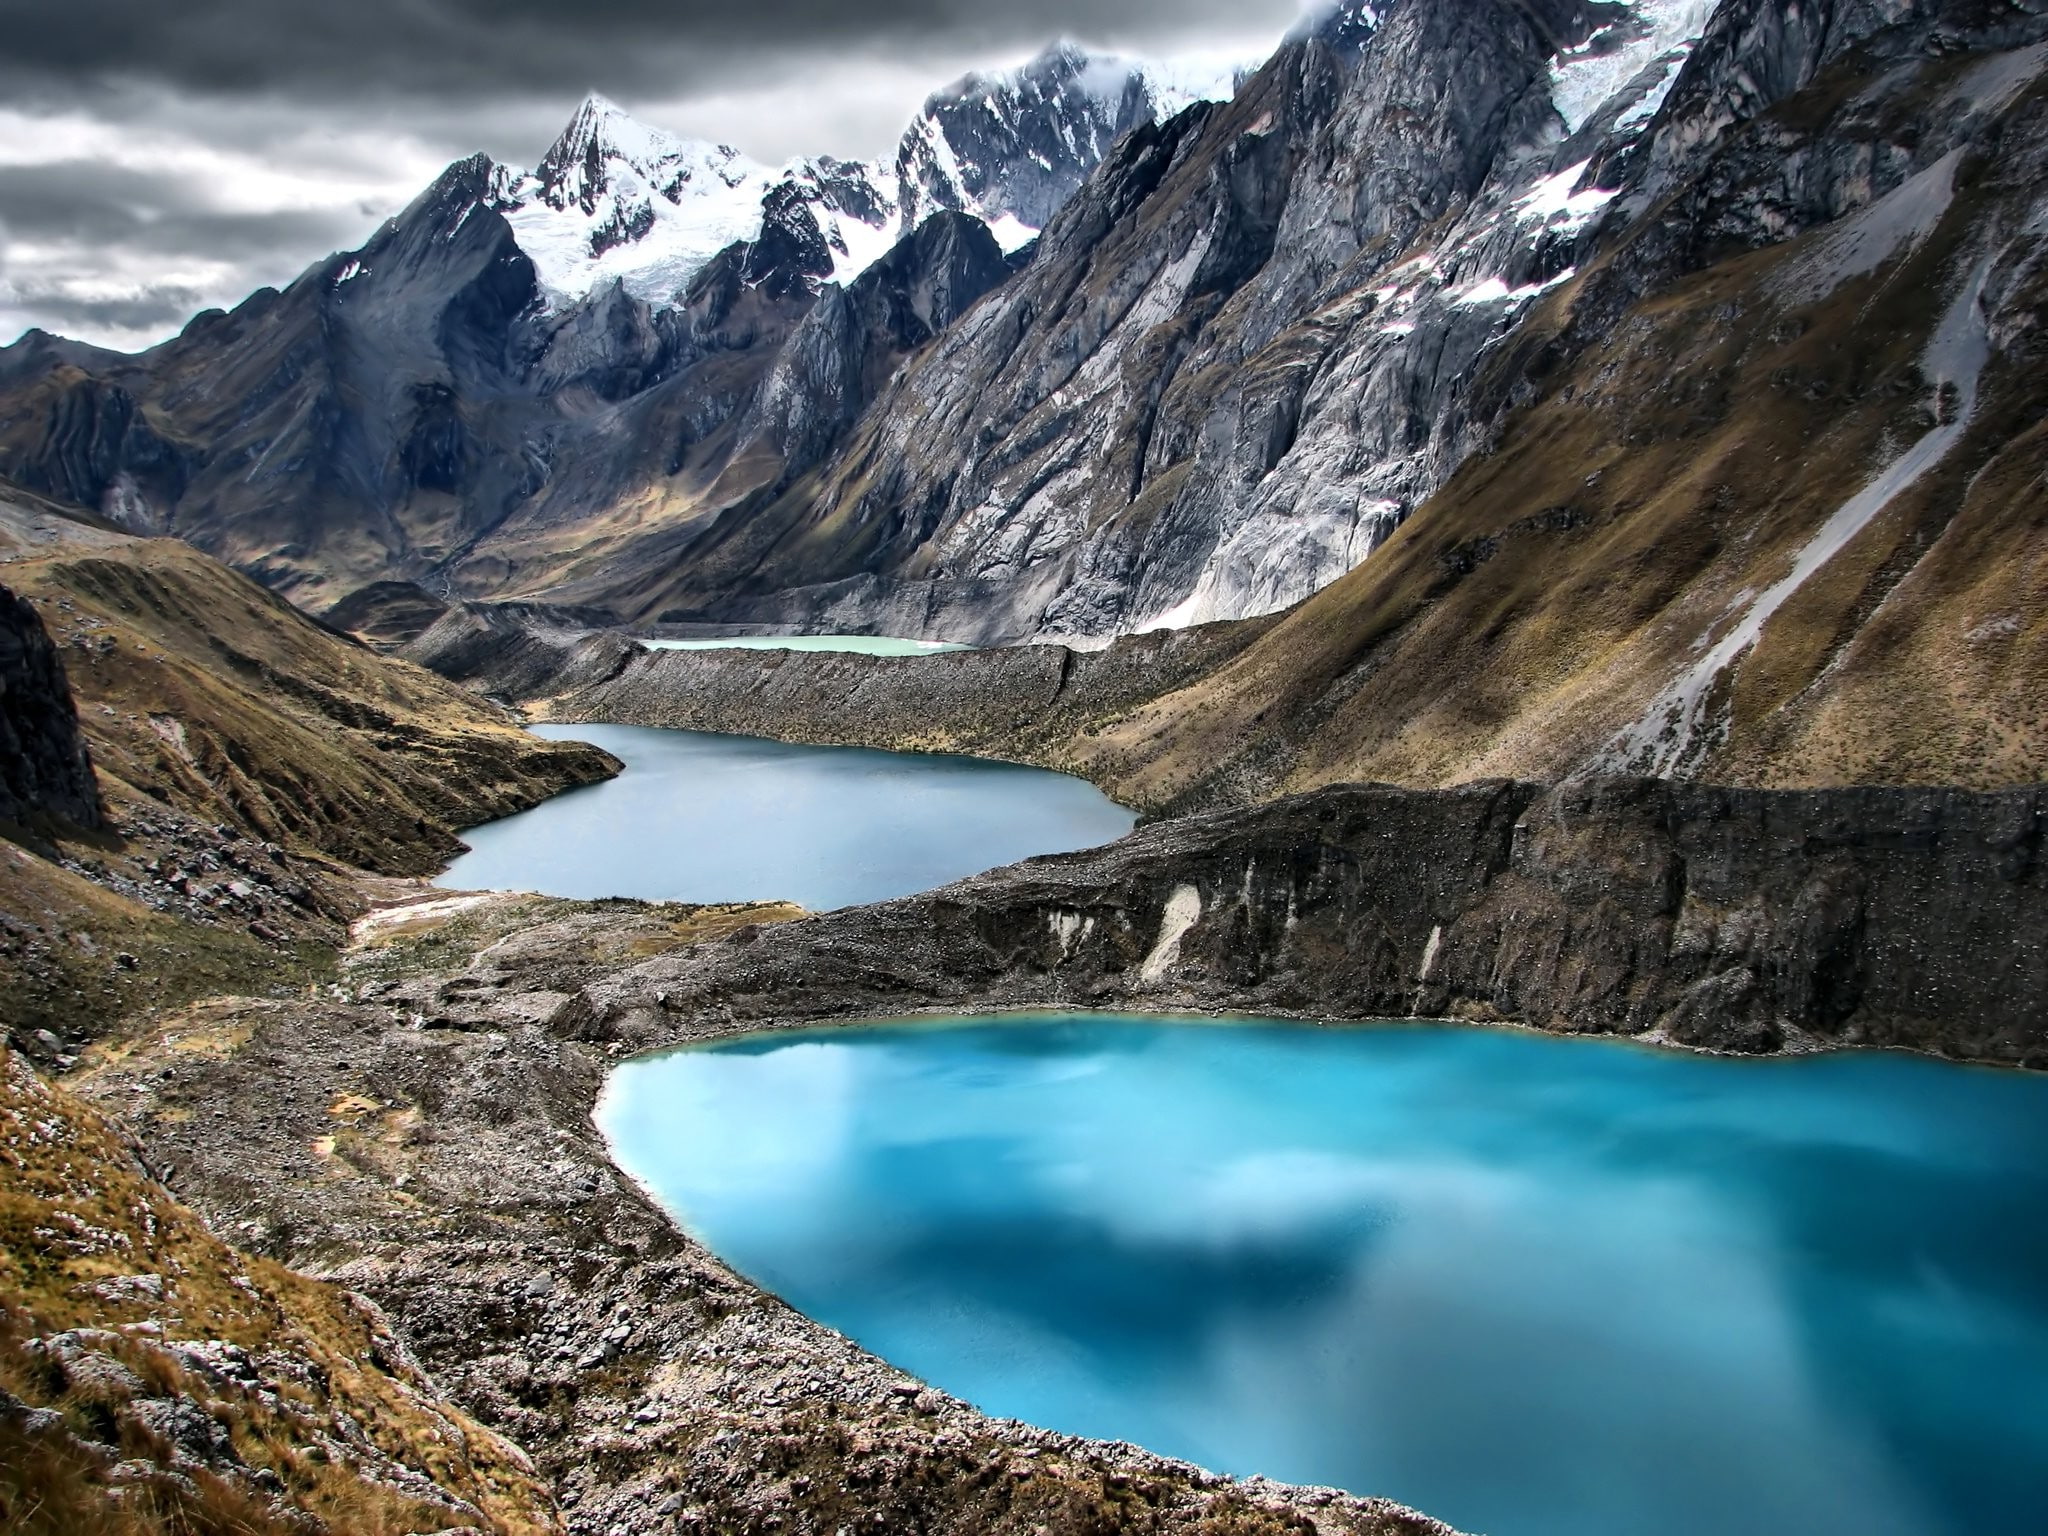 clouds, lake, landscape, mountain, nature, Peru, reflection